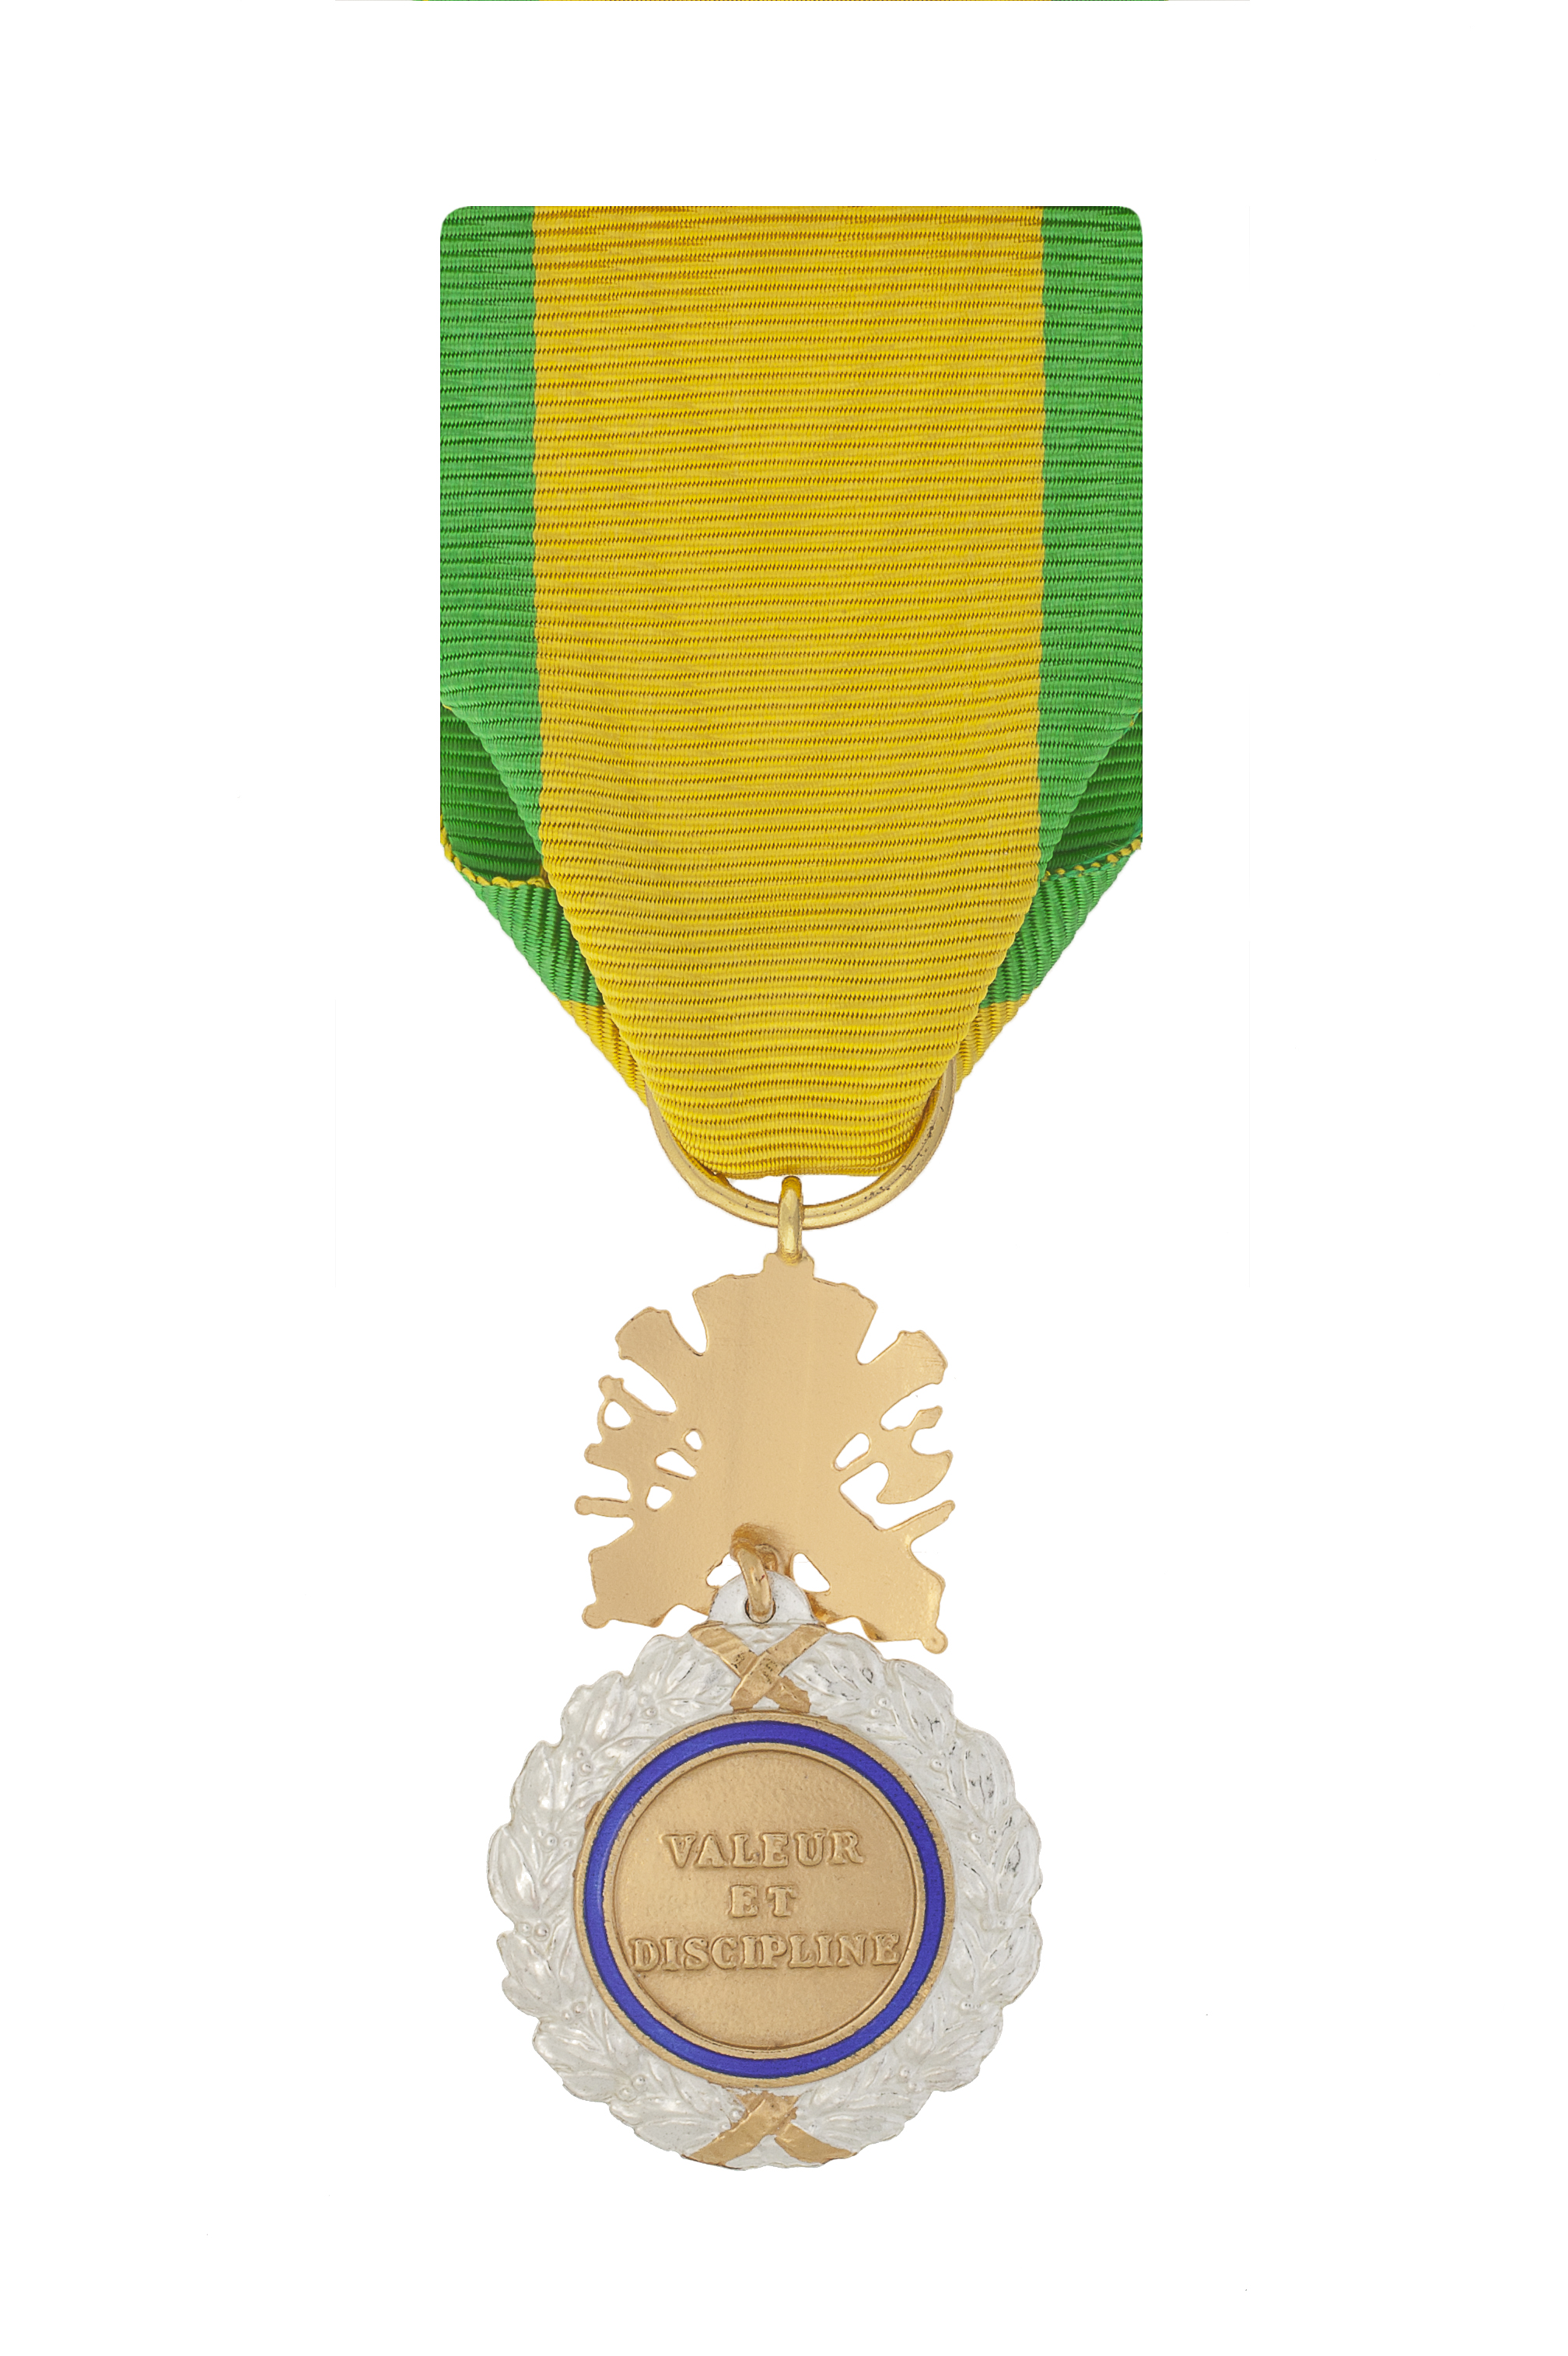 Organiser une cérémonie de remise de médailles ou de décorations à Annecy